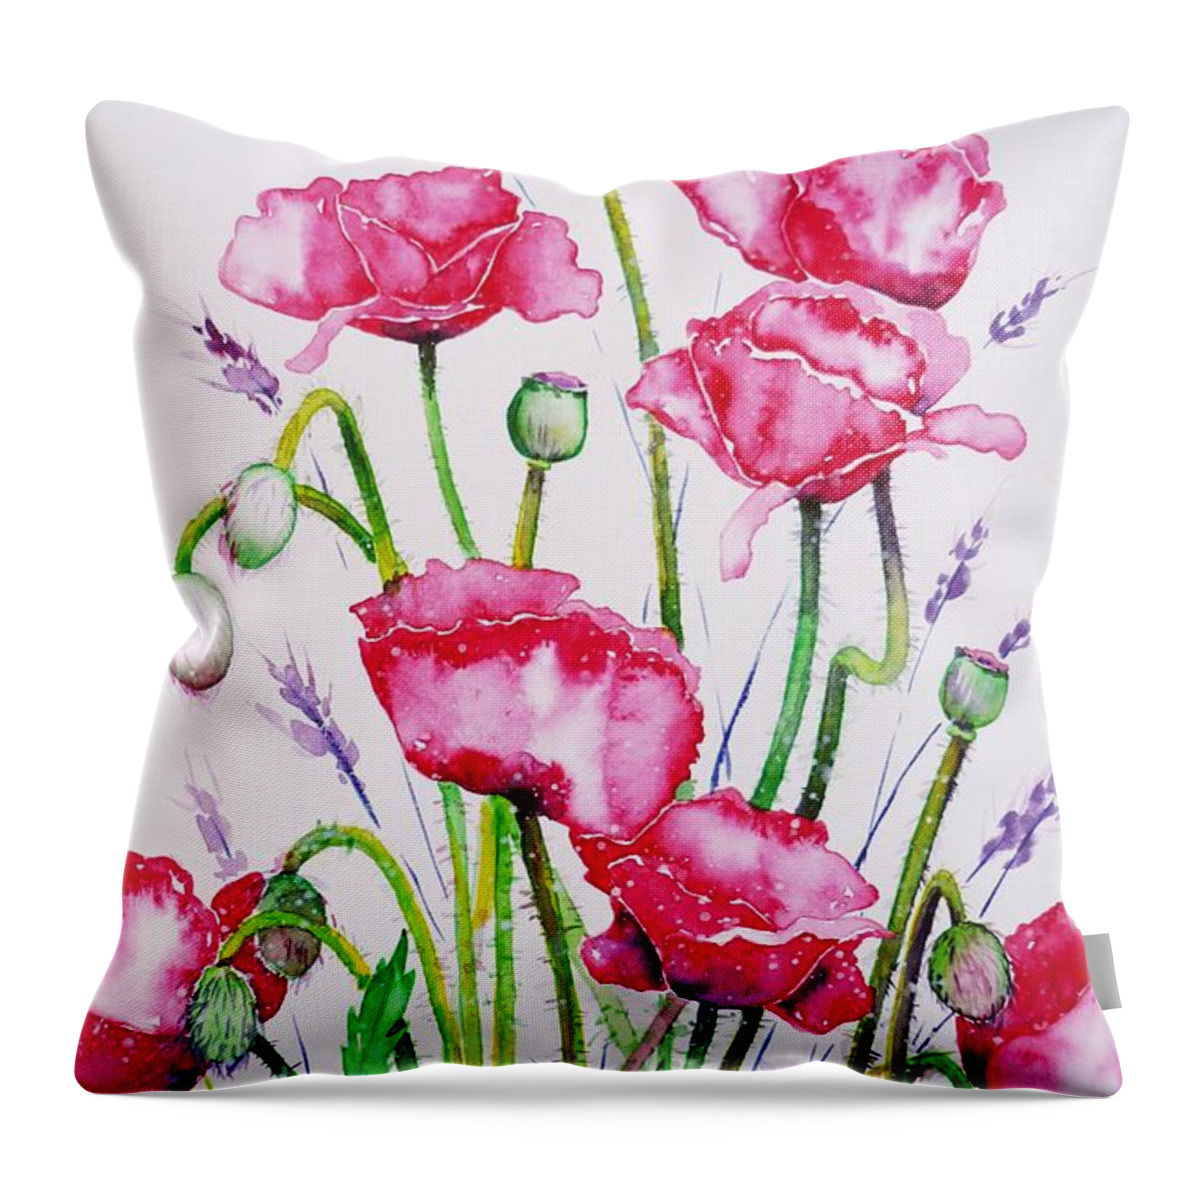 Crimson Poppies Throw Pillow featuring the painting Crimson Poppies by Zaira Dzhaubaeva